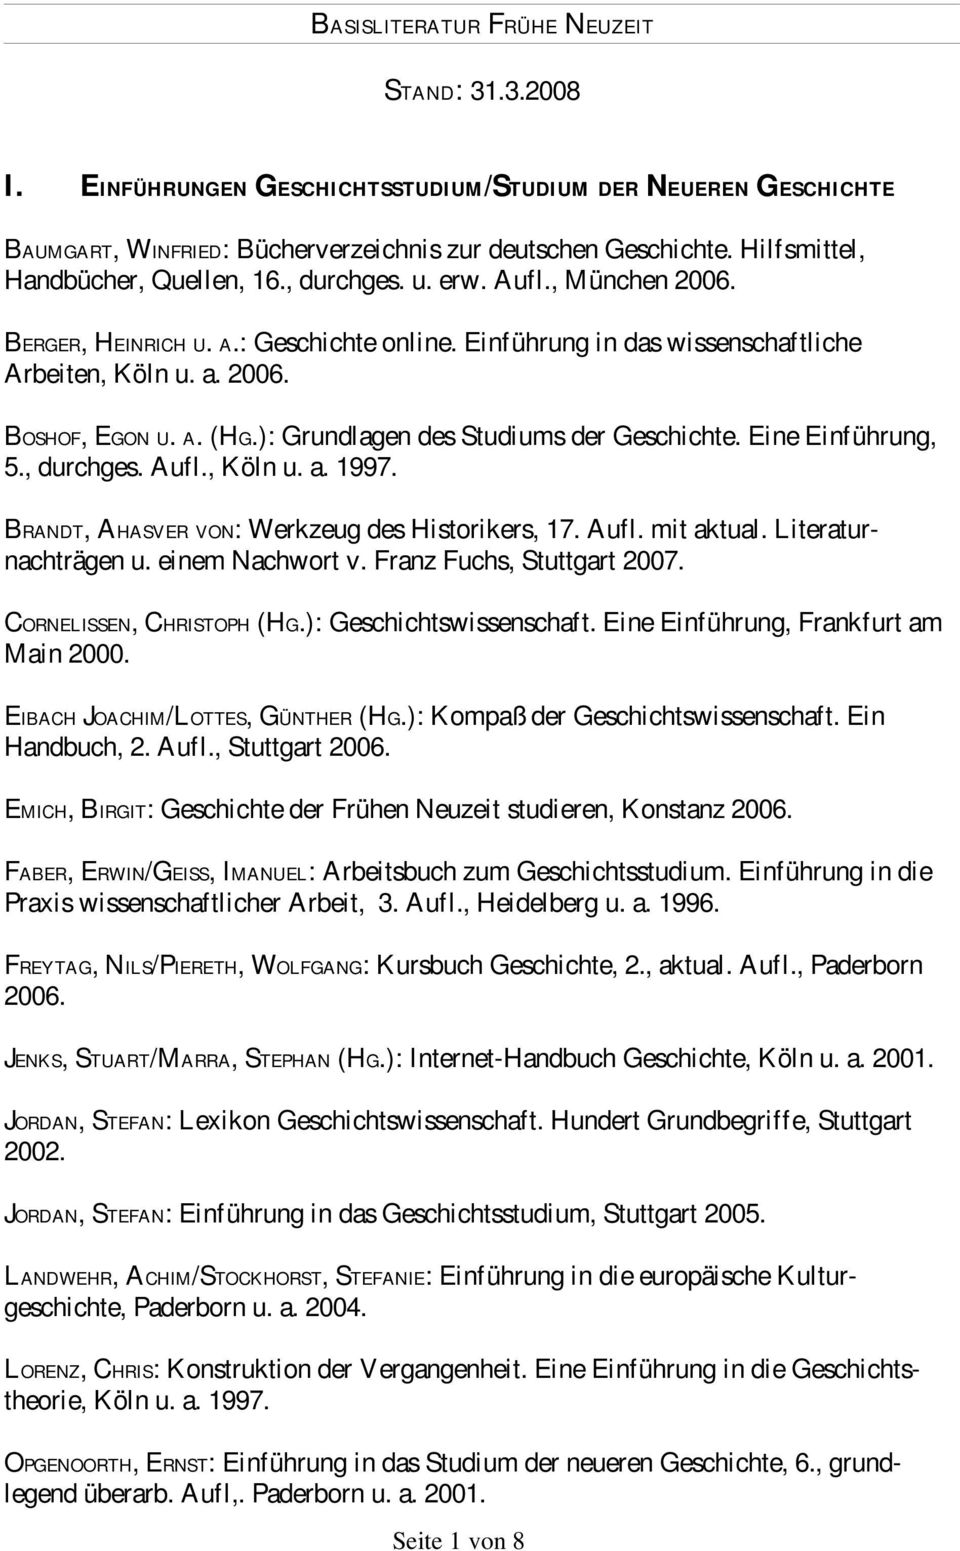 Eine Einführung, 5., durchges. Aufl., Köln u. a. 1997. BRANDT, AHASVER VON: Werkzeug des Historikers, 17. Aufl. mit aktual. Literaturnachträgen u. einem Nachwort v. Franz Fuchs, Stuttgart 2007.